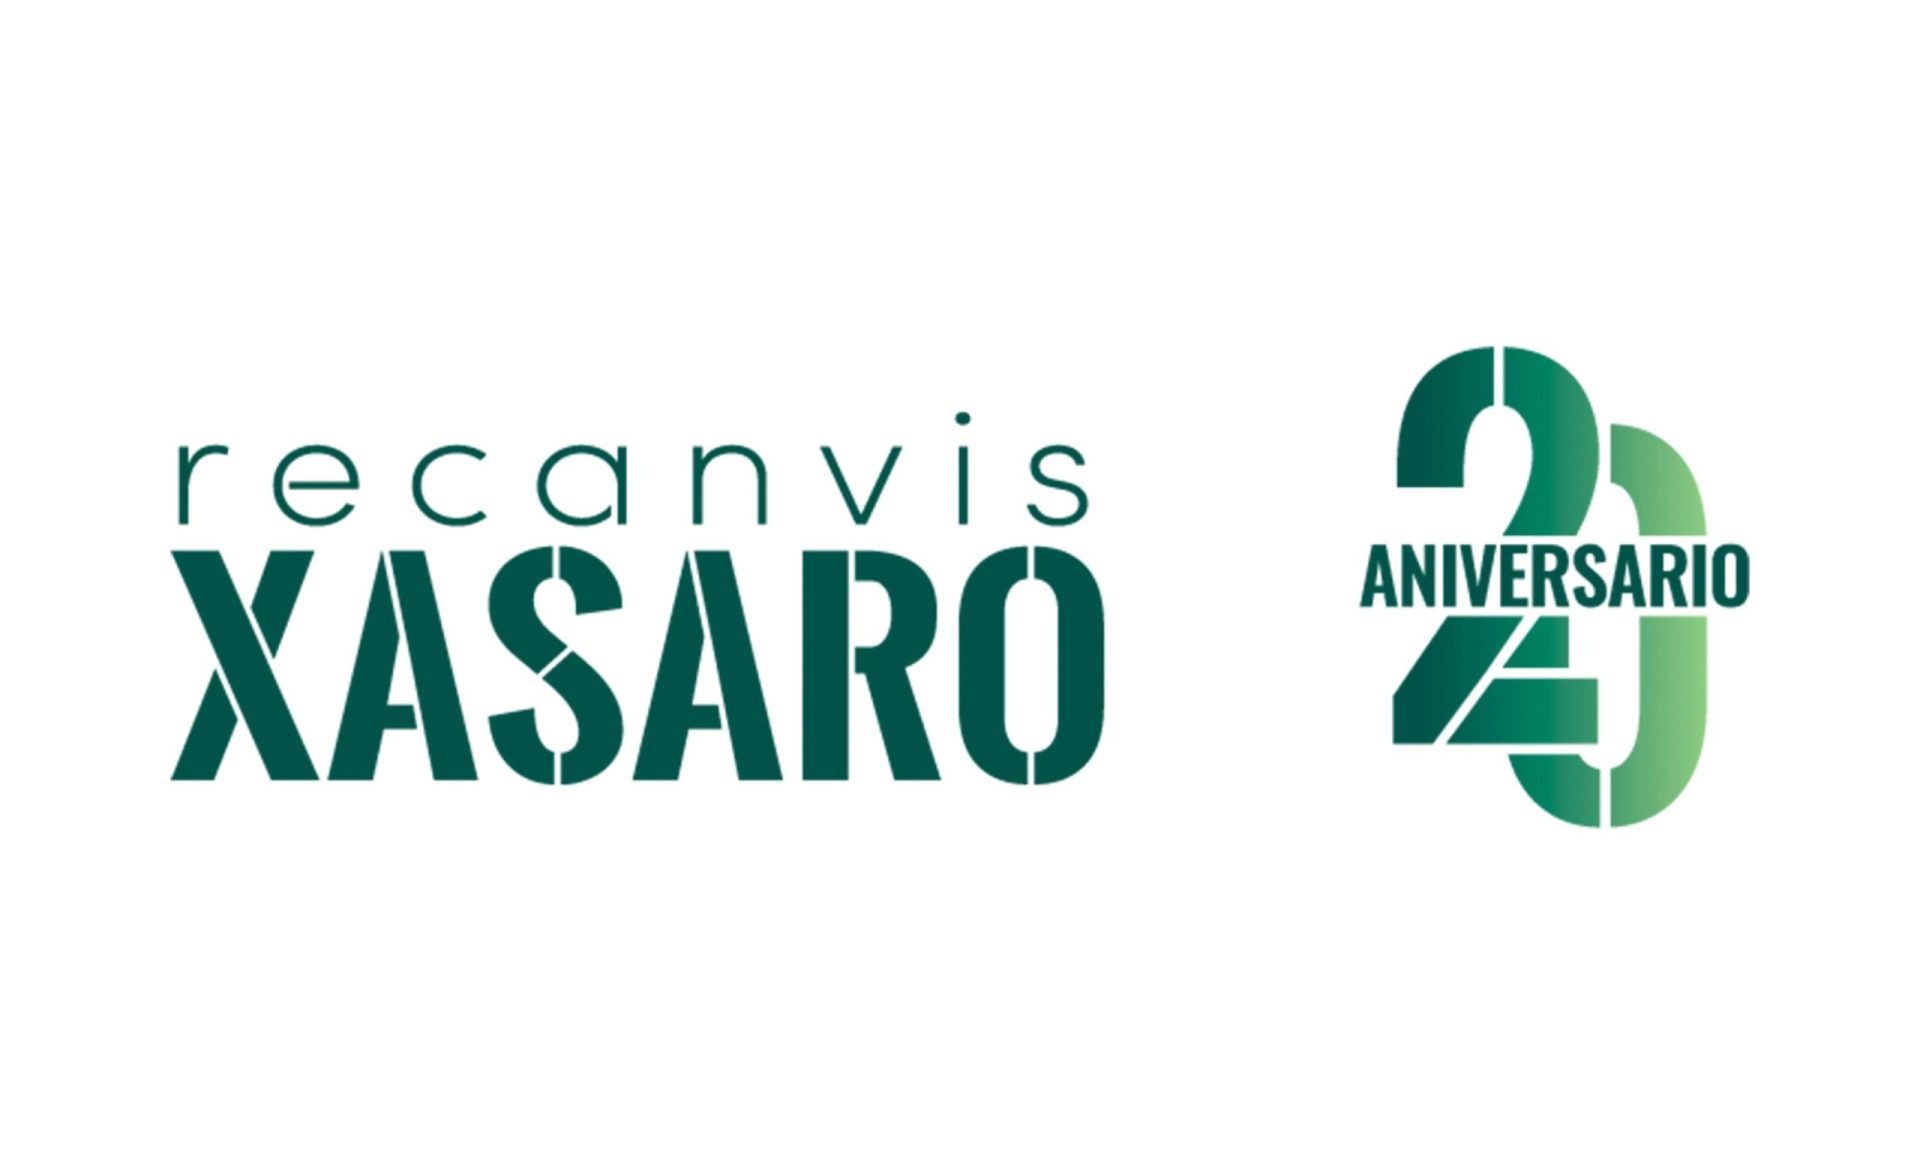 Nuevo logotipo Recanvis Xasaro con el icono del 20 aniversario